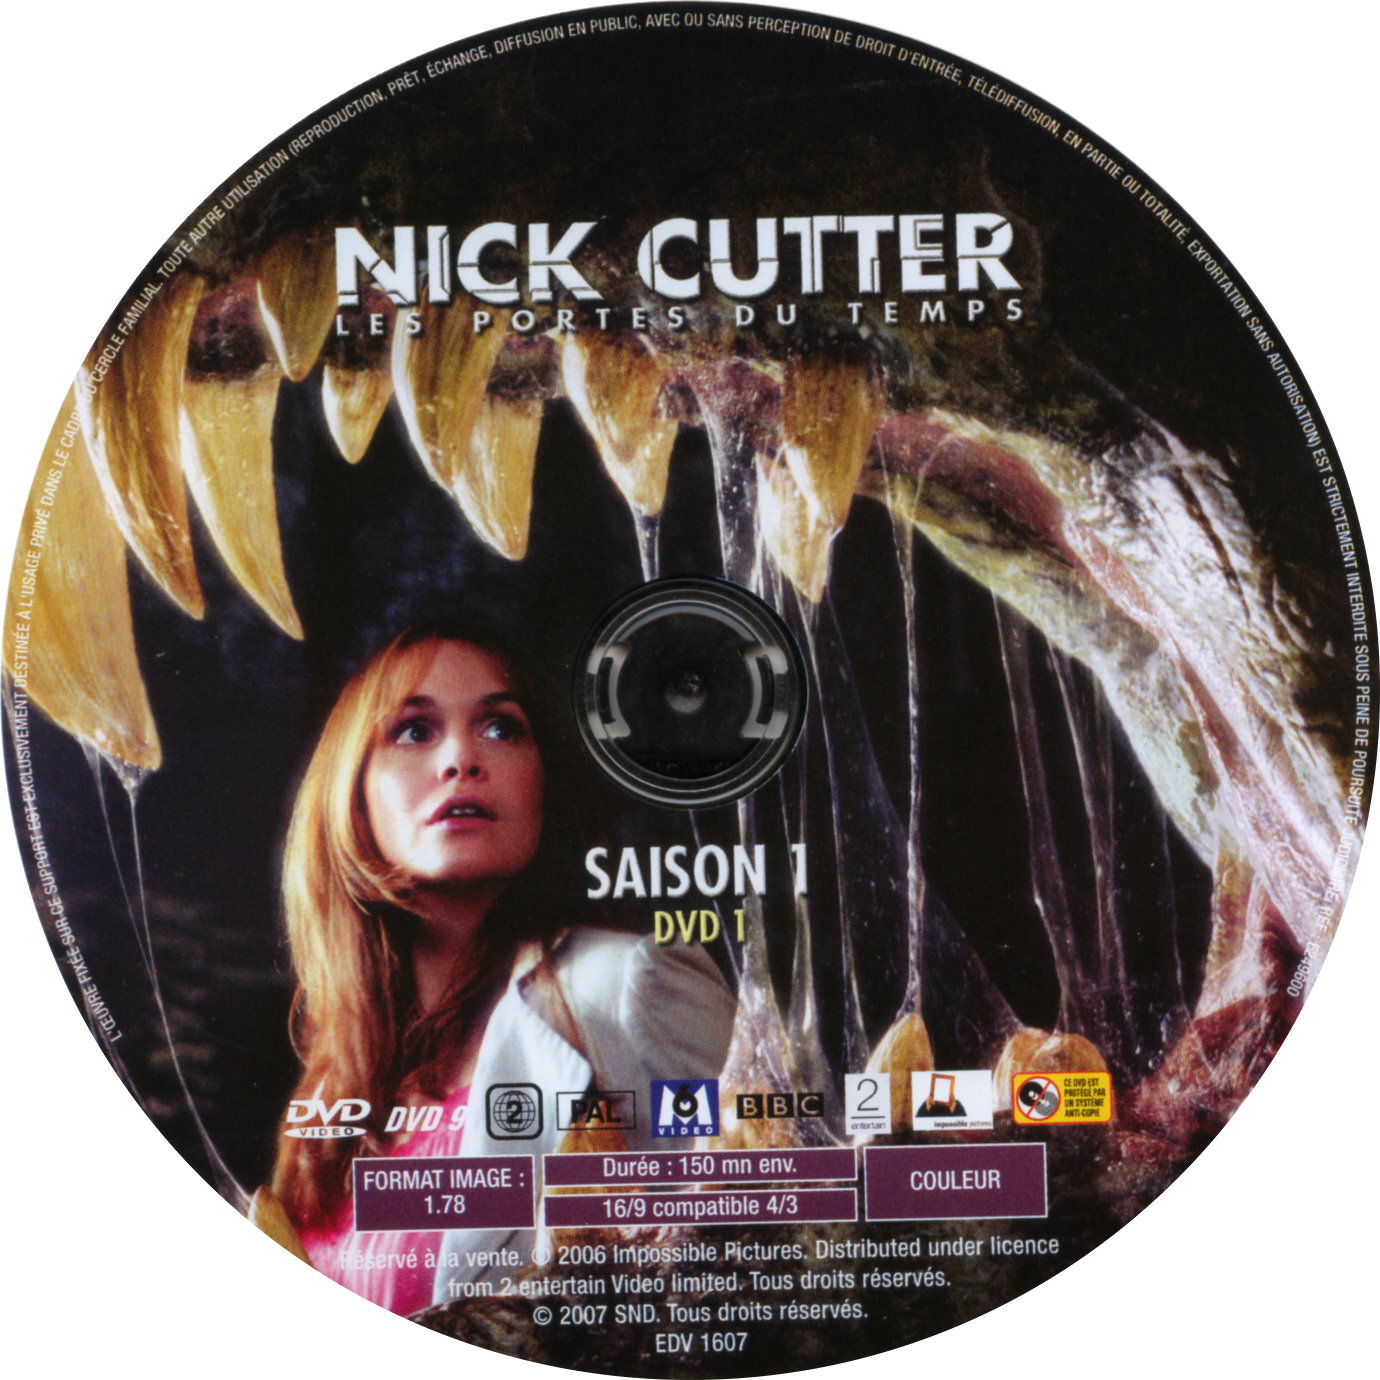 Nick Cutter Les portes du temps Saison 1 DISC 1